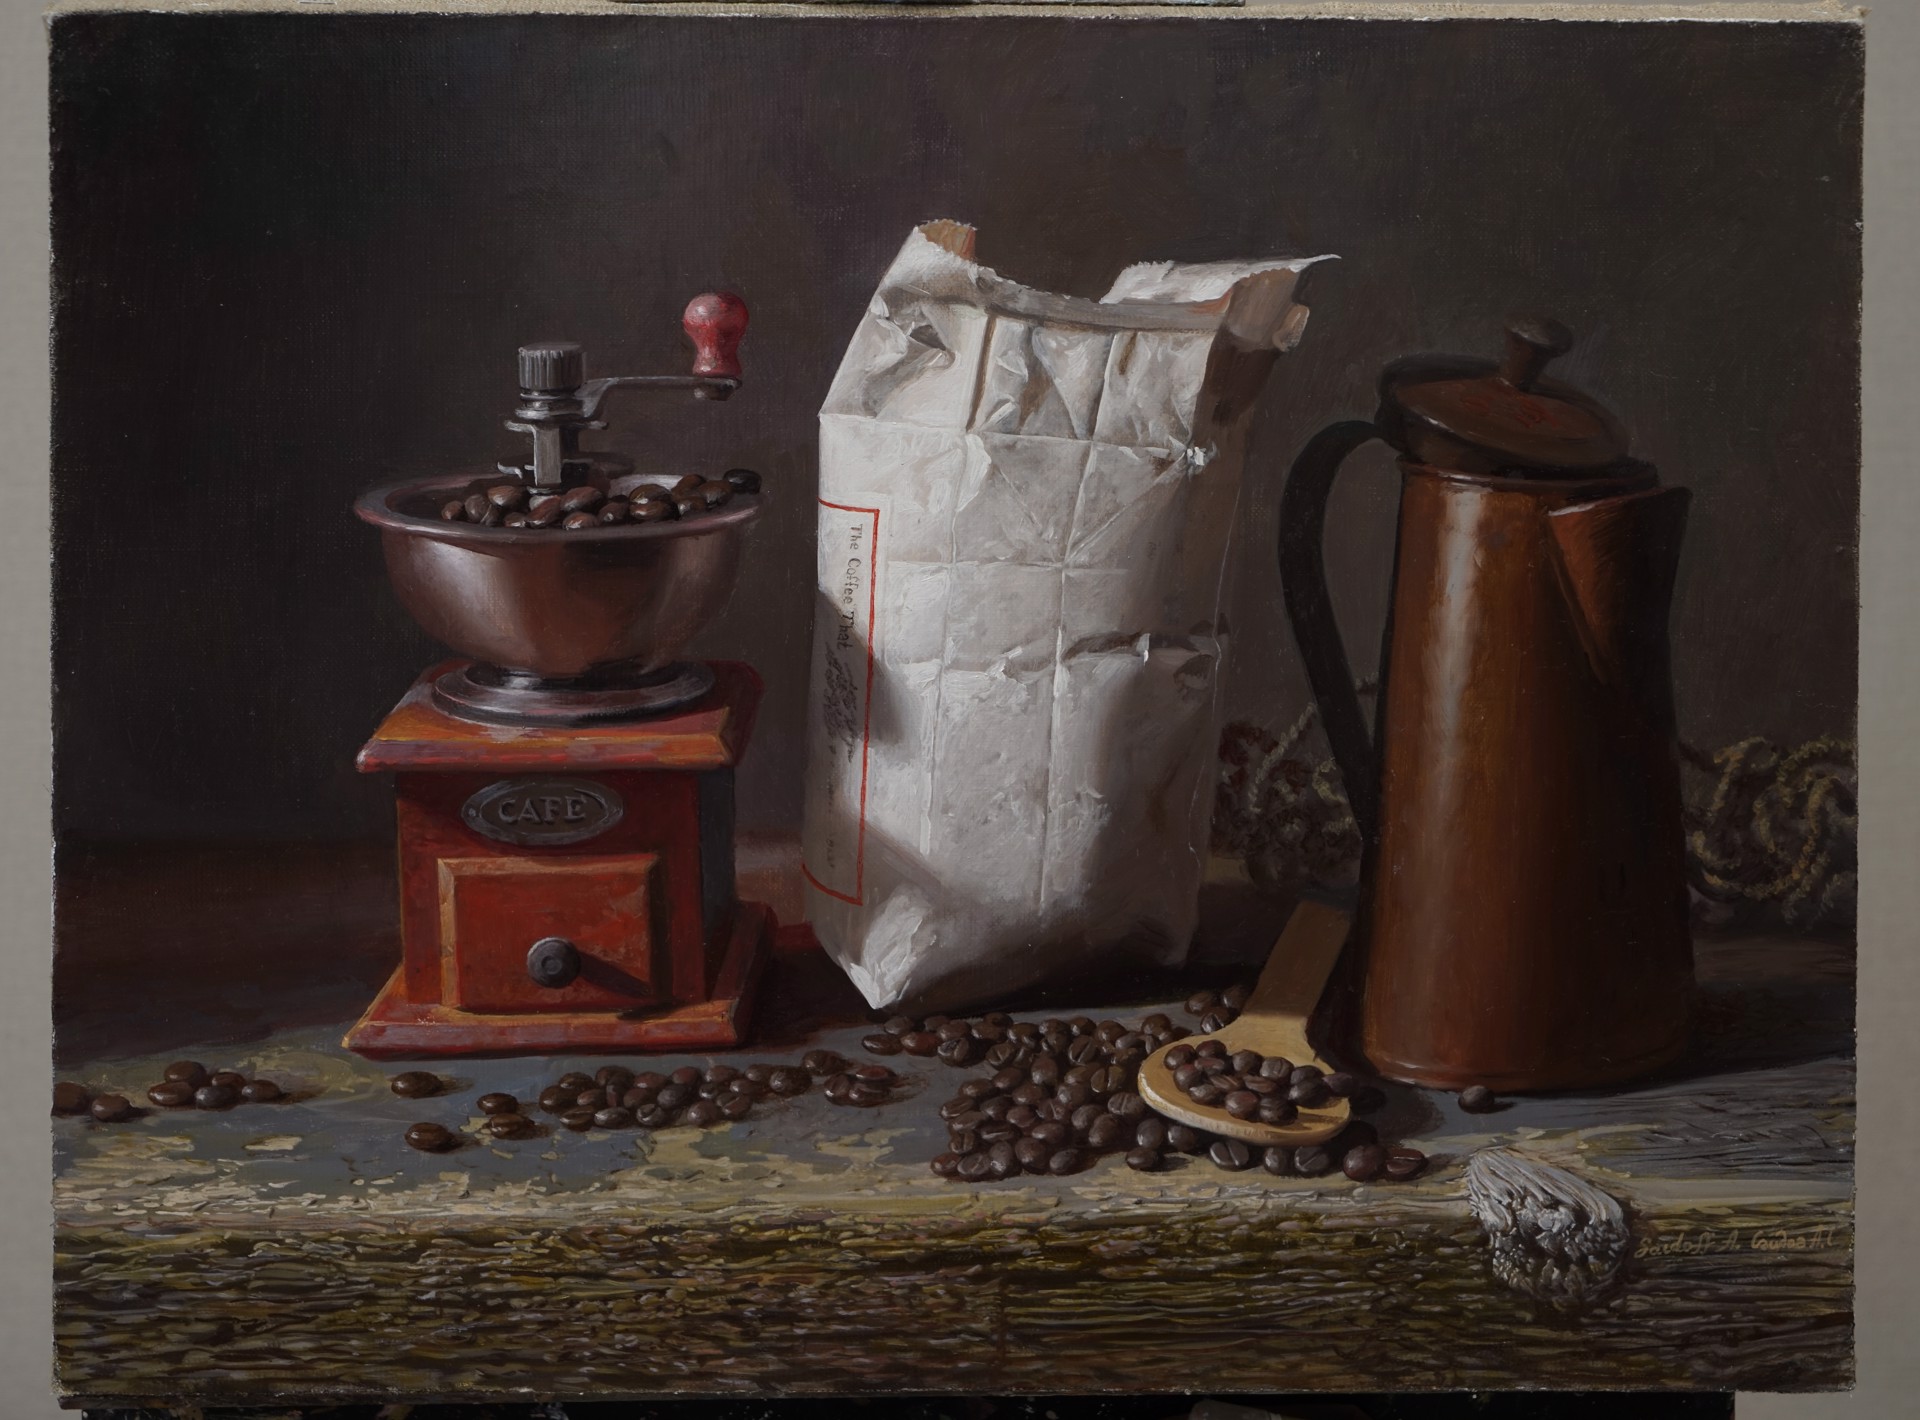 Coffee Lover by Alexander Saidov